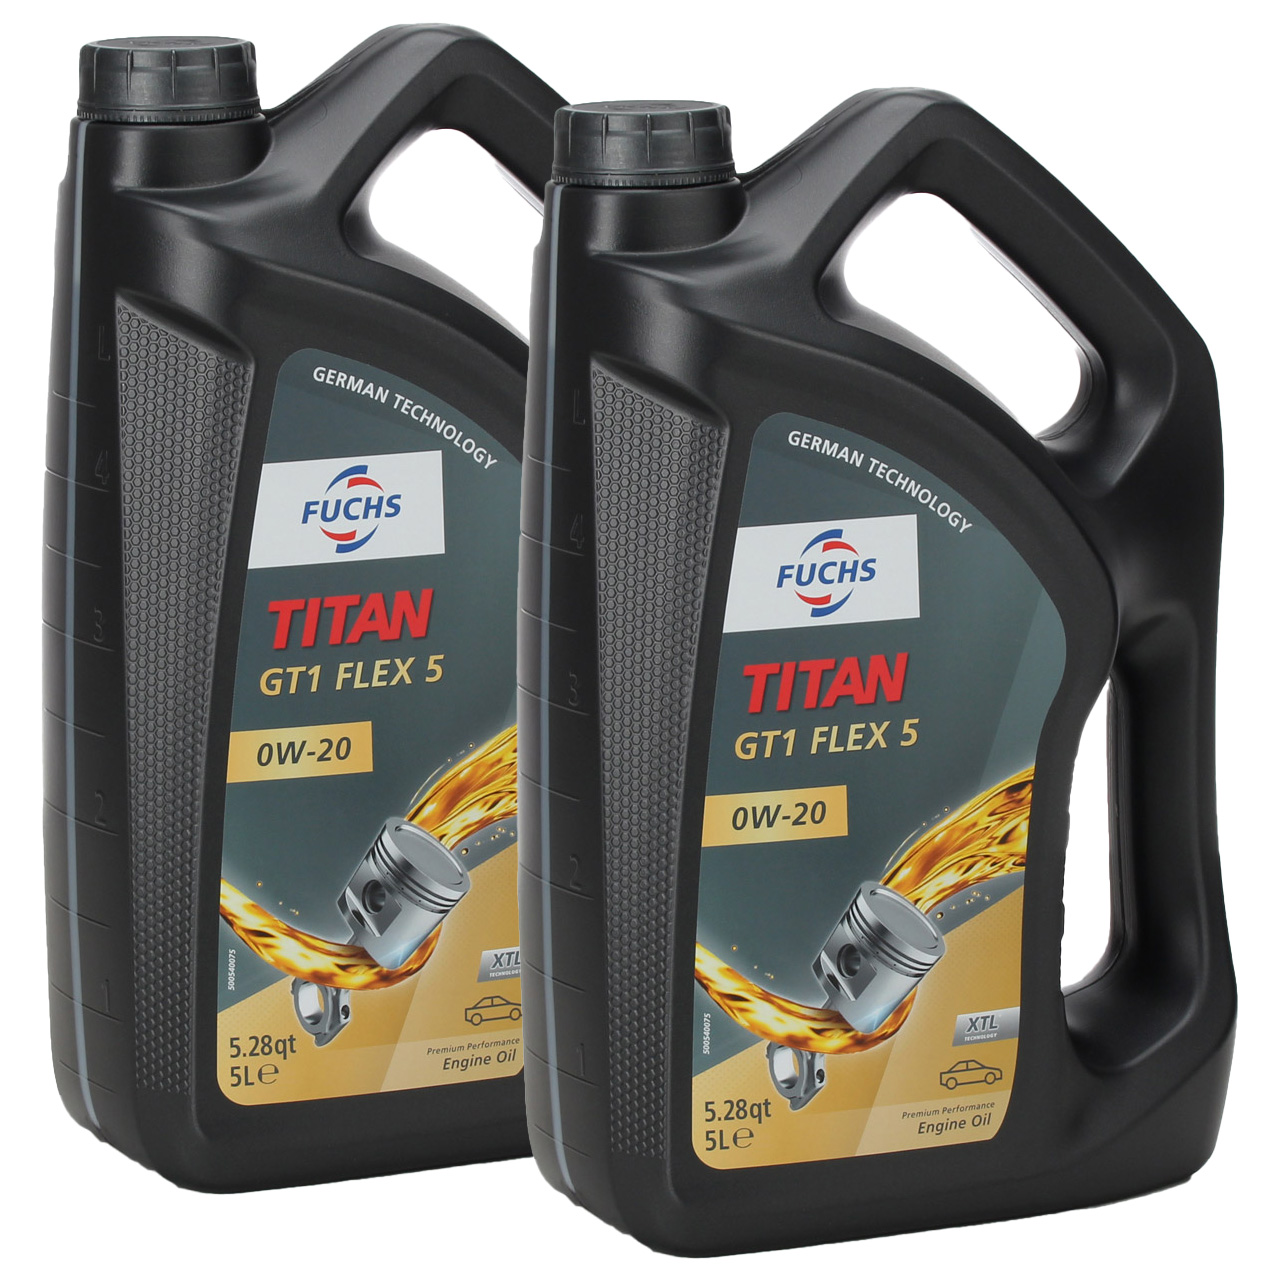 10L 10 Liter FUCHS TITAN GT1 FLEX 5 0W-20 0W20 Motoröl Öl BMW LL-17 FE+ MB 229.71